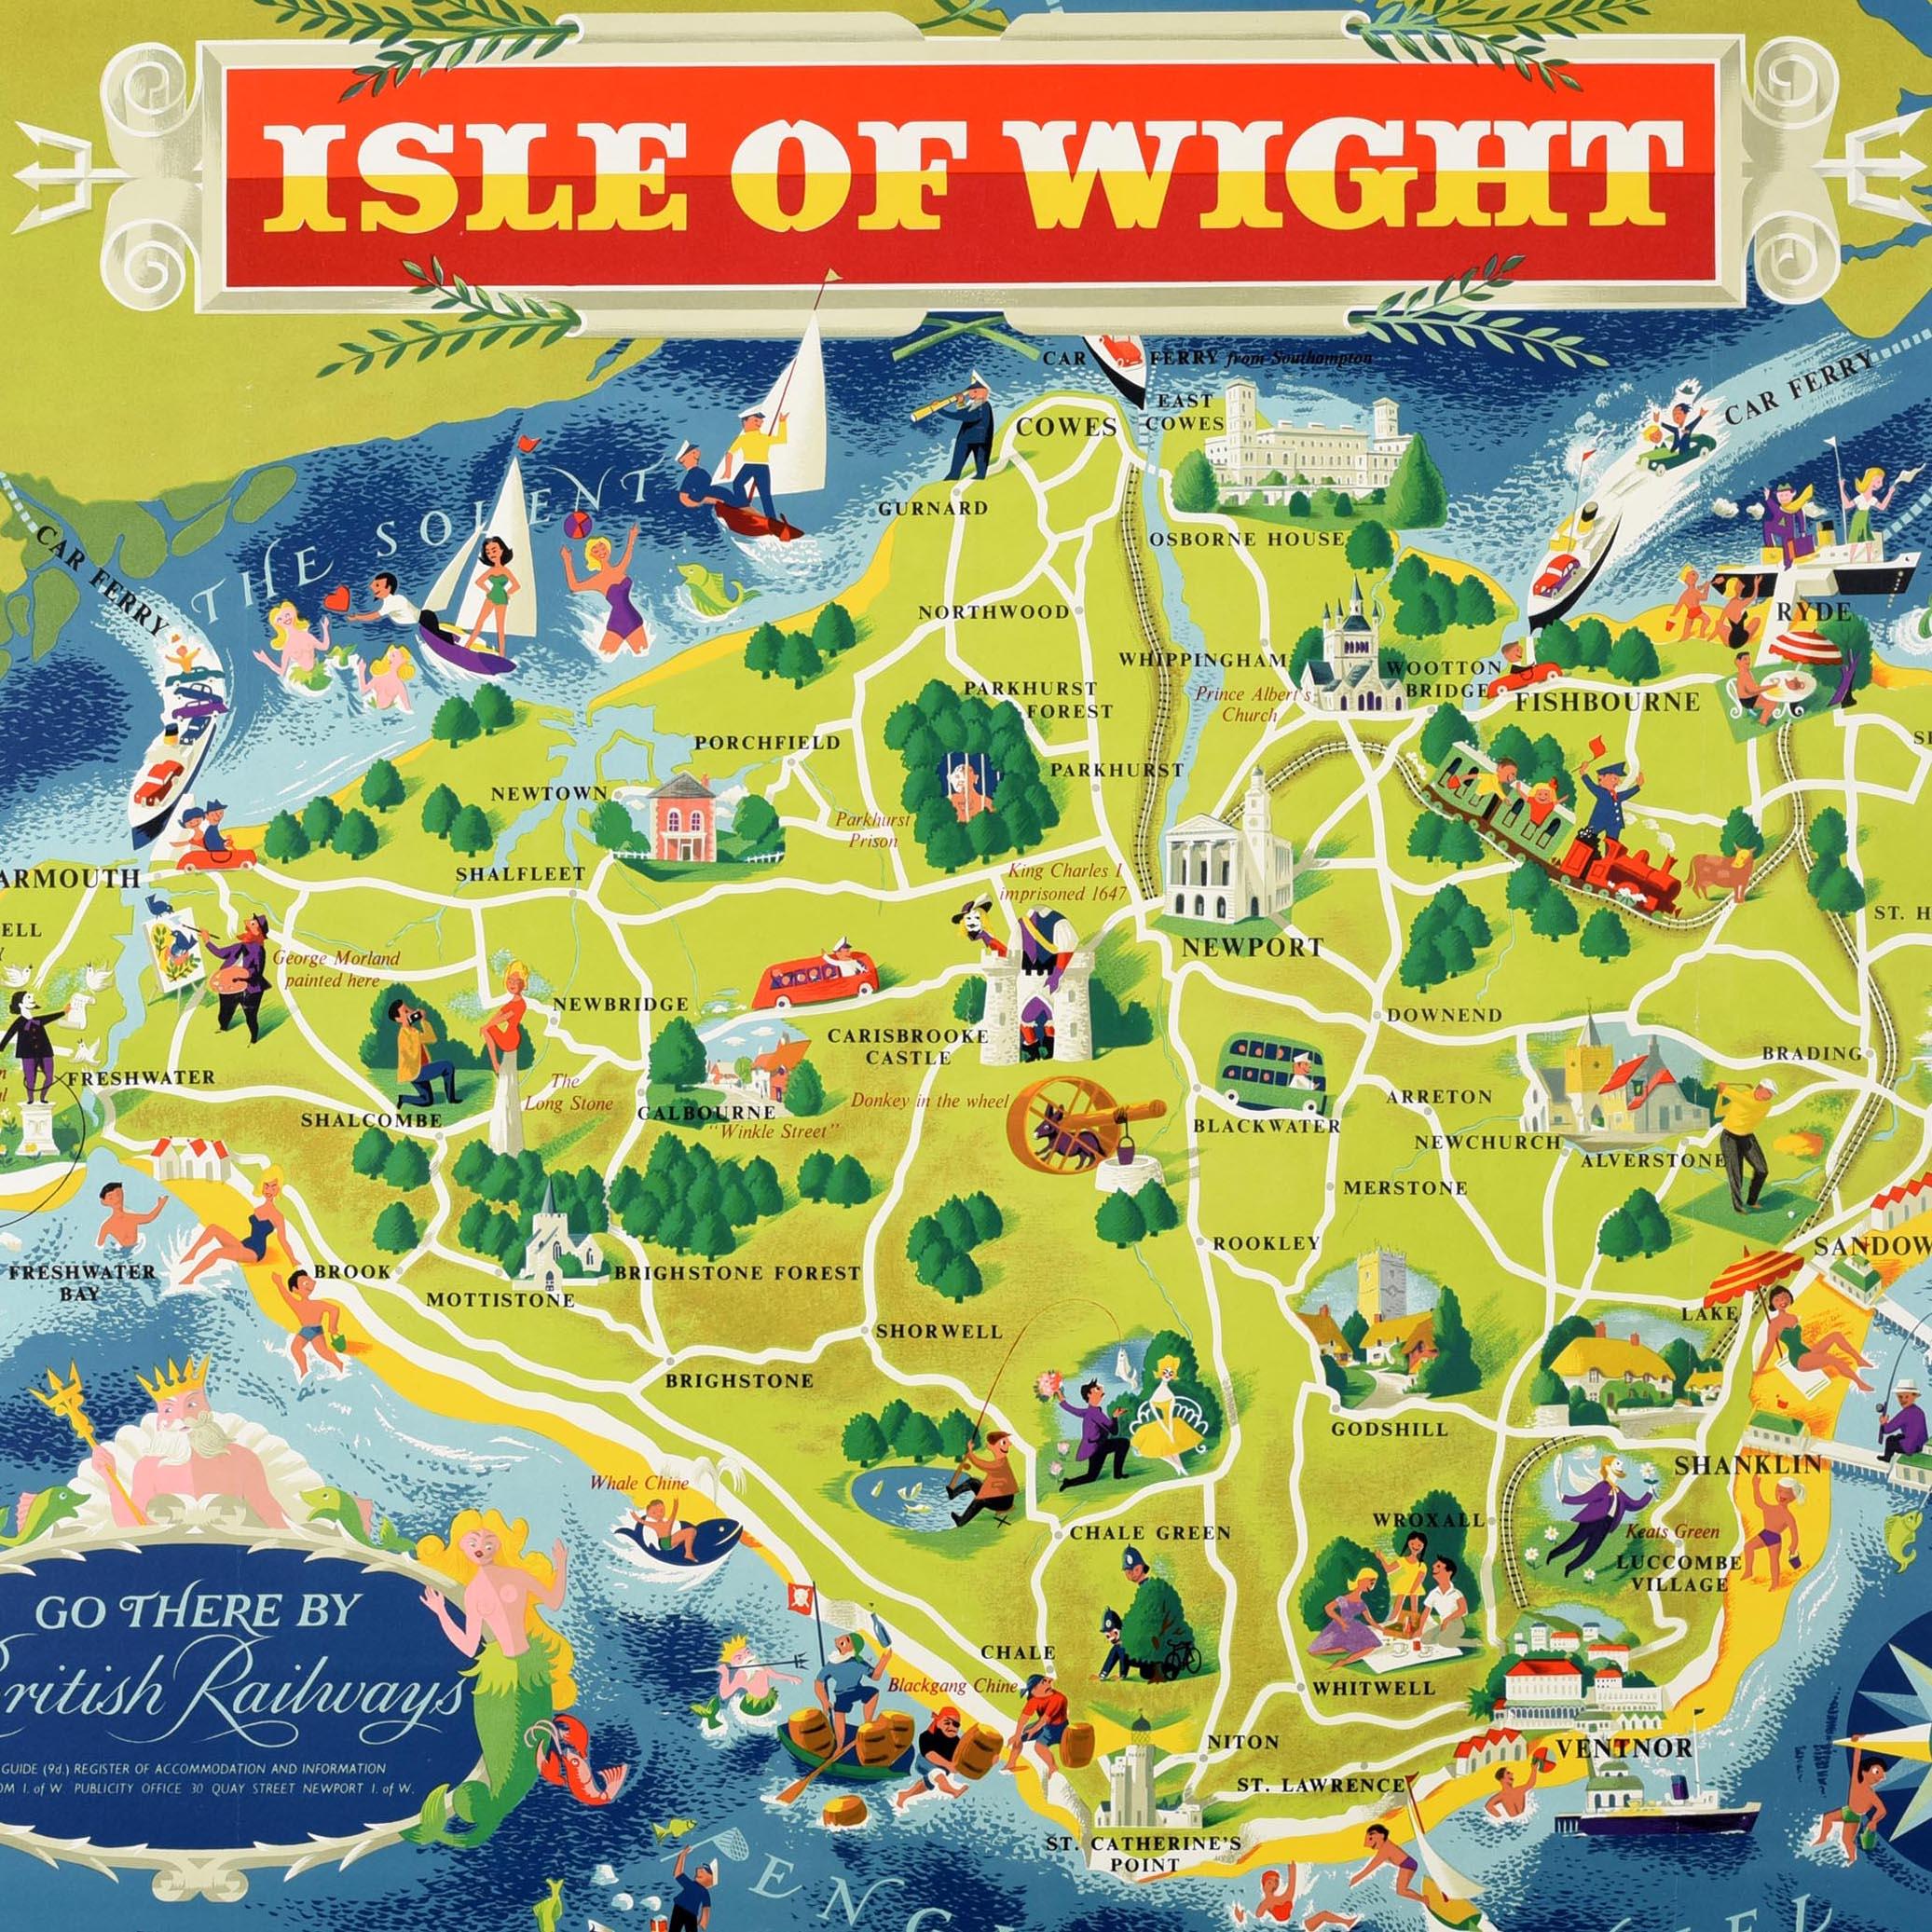 Original-Reiseplakat für die Isle of Wight Go There By British Railways - Southern Region. Großartiges Kartenbild des bedeutenden Werbegrafikers und Plakatdesigners Reginald Montague Lander (1913-1980) mit farbenfrohen Illustrationen von